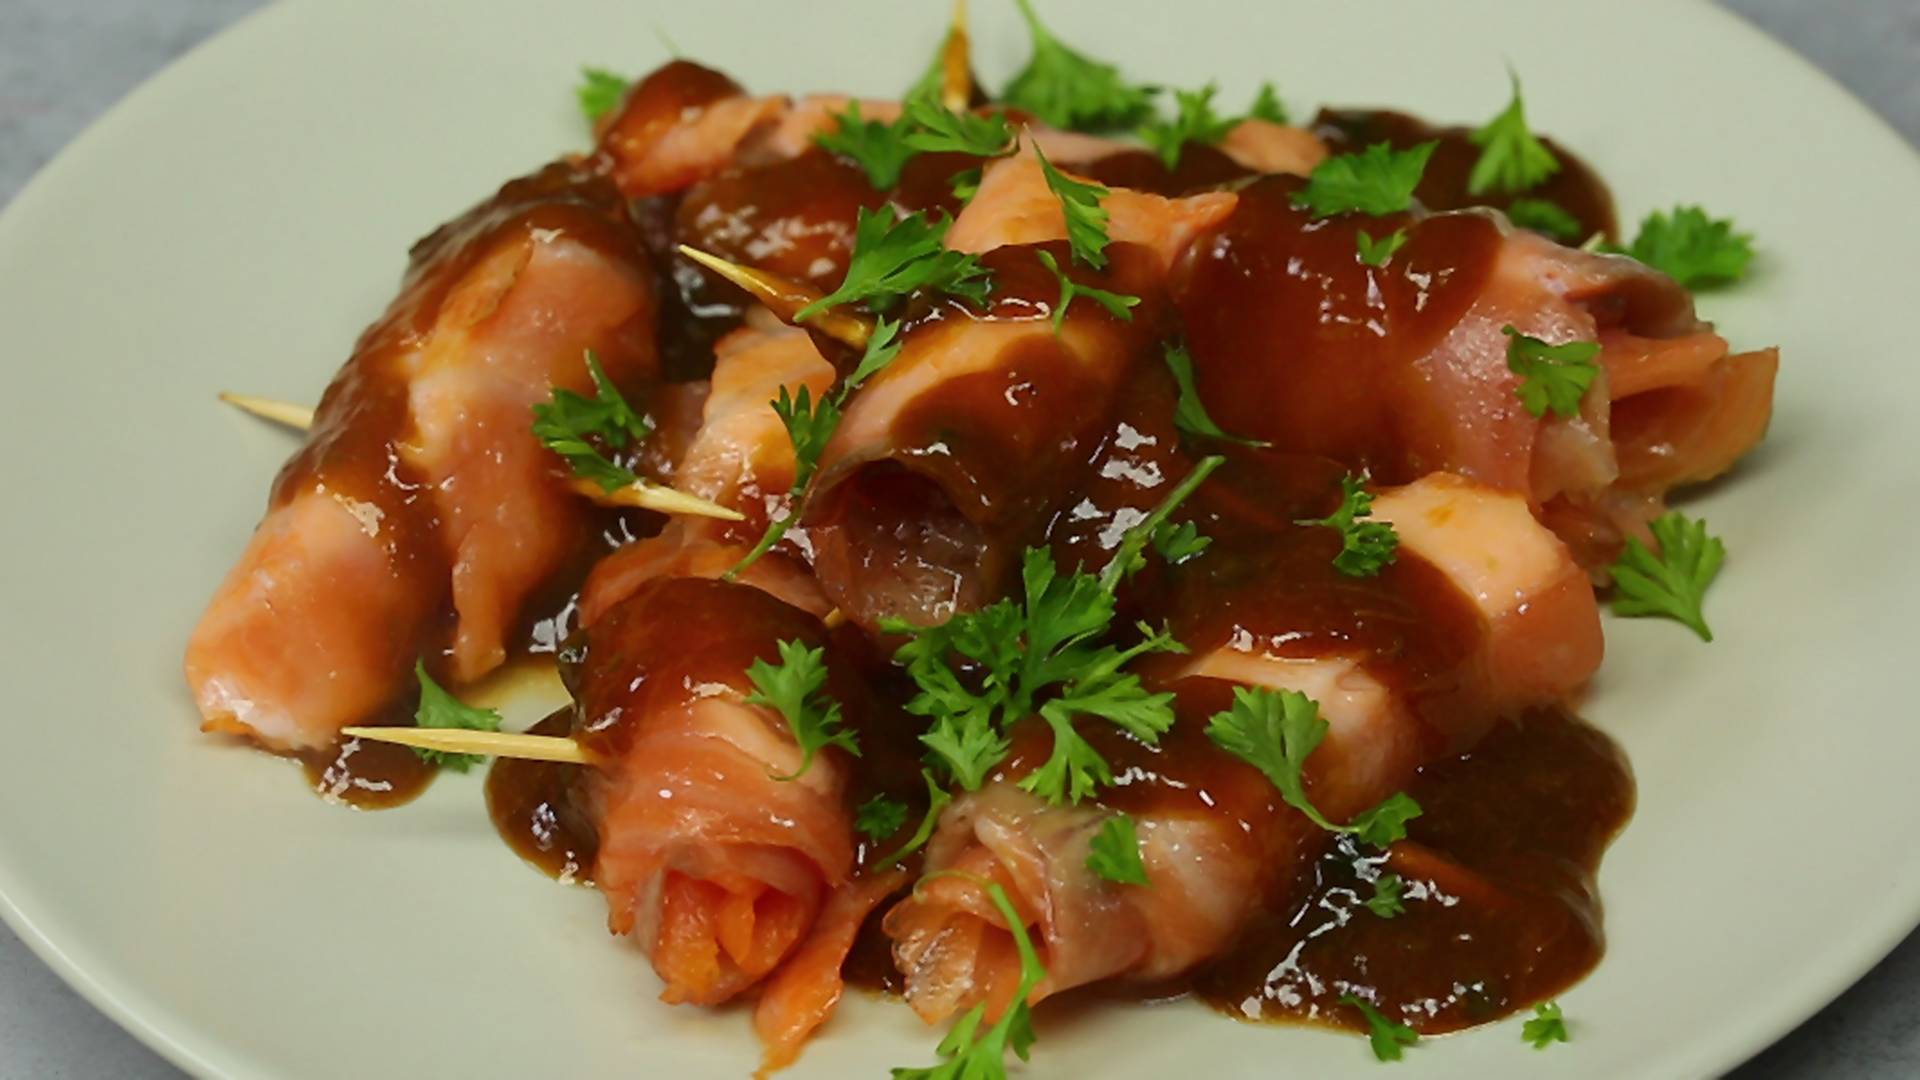 Rýchla chuťovka k filmu: Priprav pikantné lososové jednohubky s marhuľovým džemom